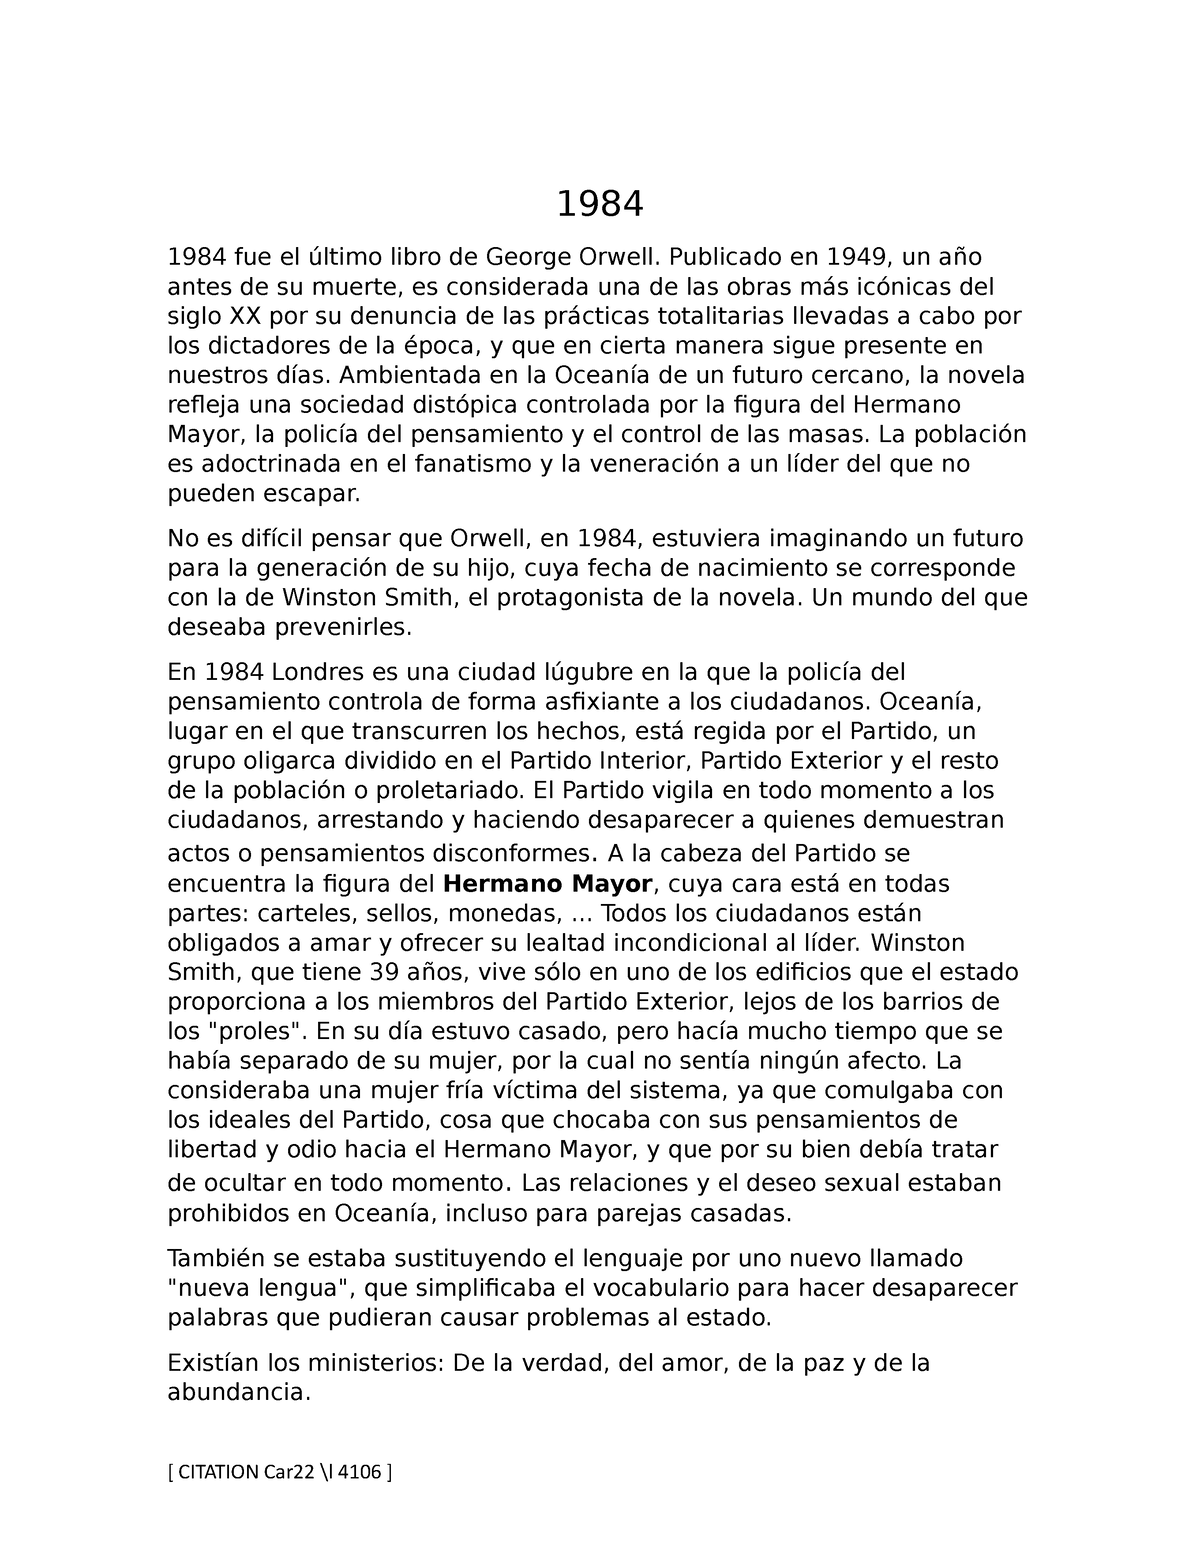 resumen 1984 conclusion